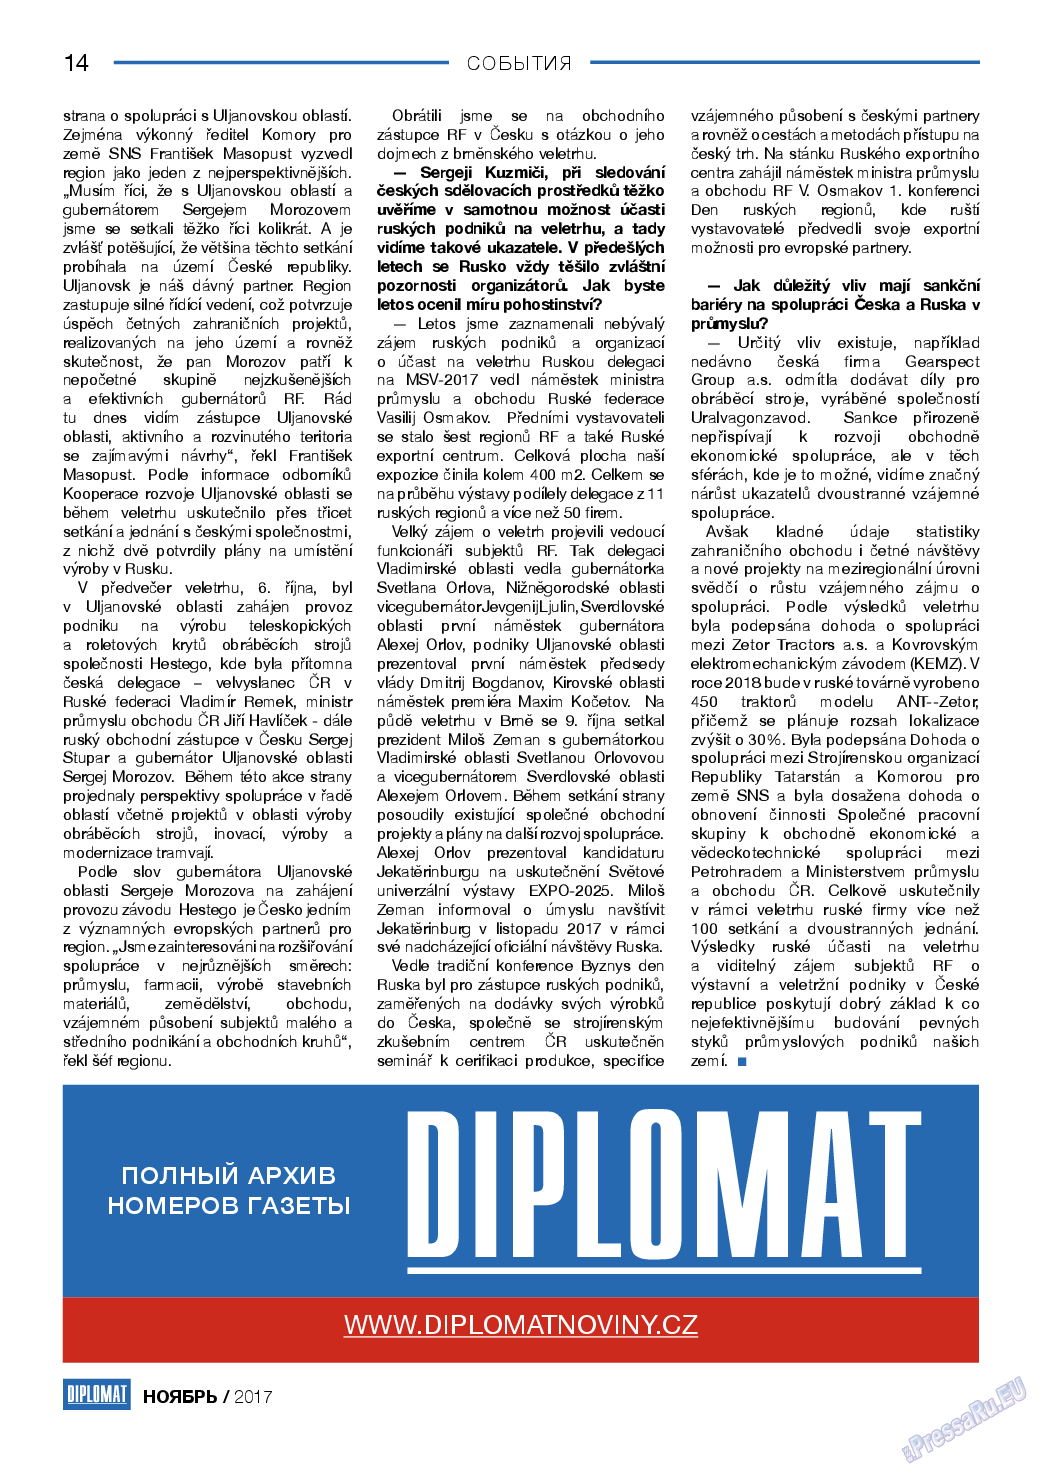 Diplomat (газета). 2017 год, номер 98, стр. 14